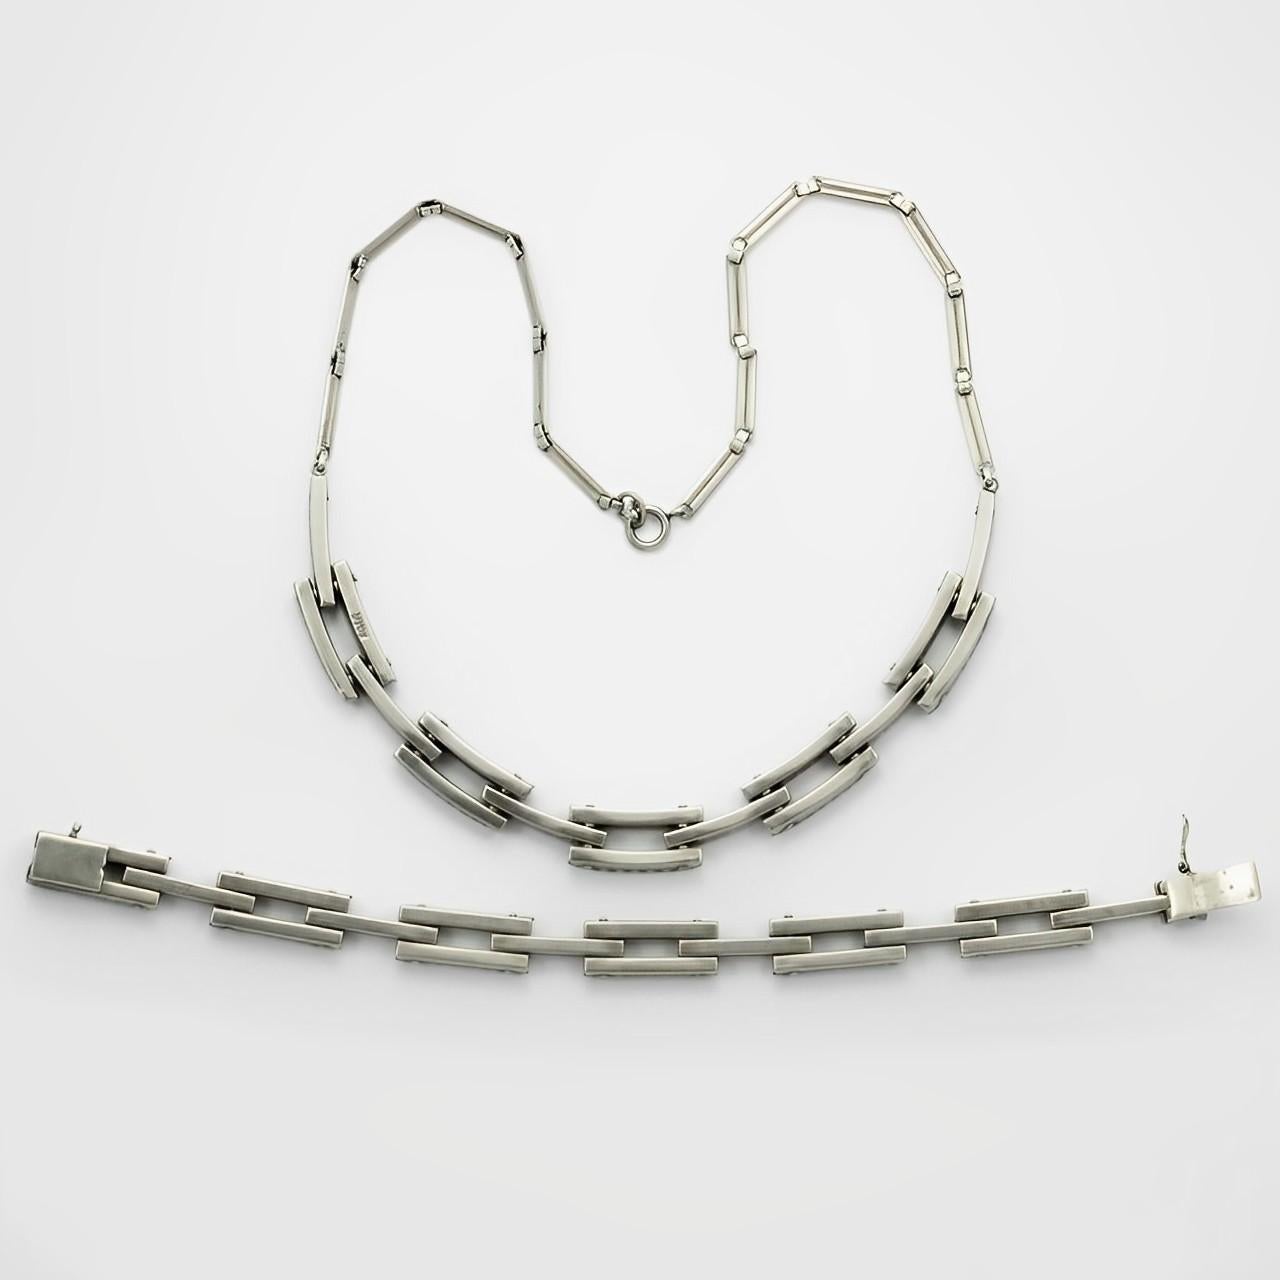 Schreiber & Hiller Art Deco DRGM Silver Tone Rhinestone Link Necklace Bracelet For Sale 2